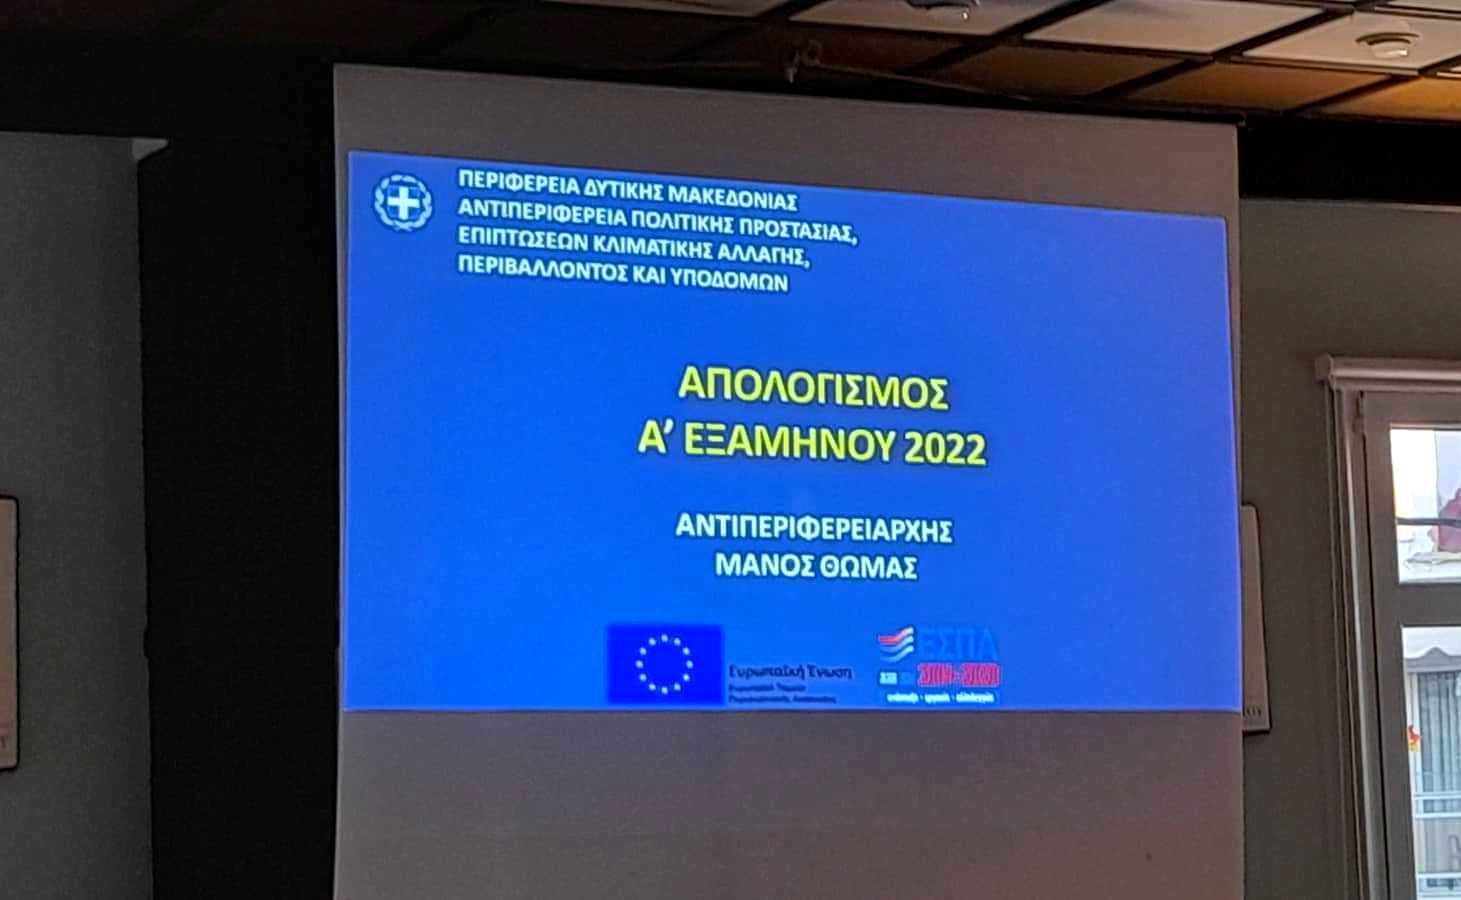 Παρουσίαση Απολογισμού 1ου εξαμήνου του 2022 των Θεματικών Αντιπεριφερειαρχών Θωμά Μάνου και Ευφροσύνης Ντιό